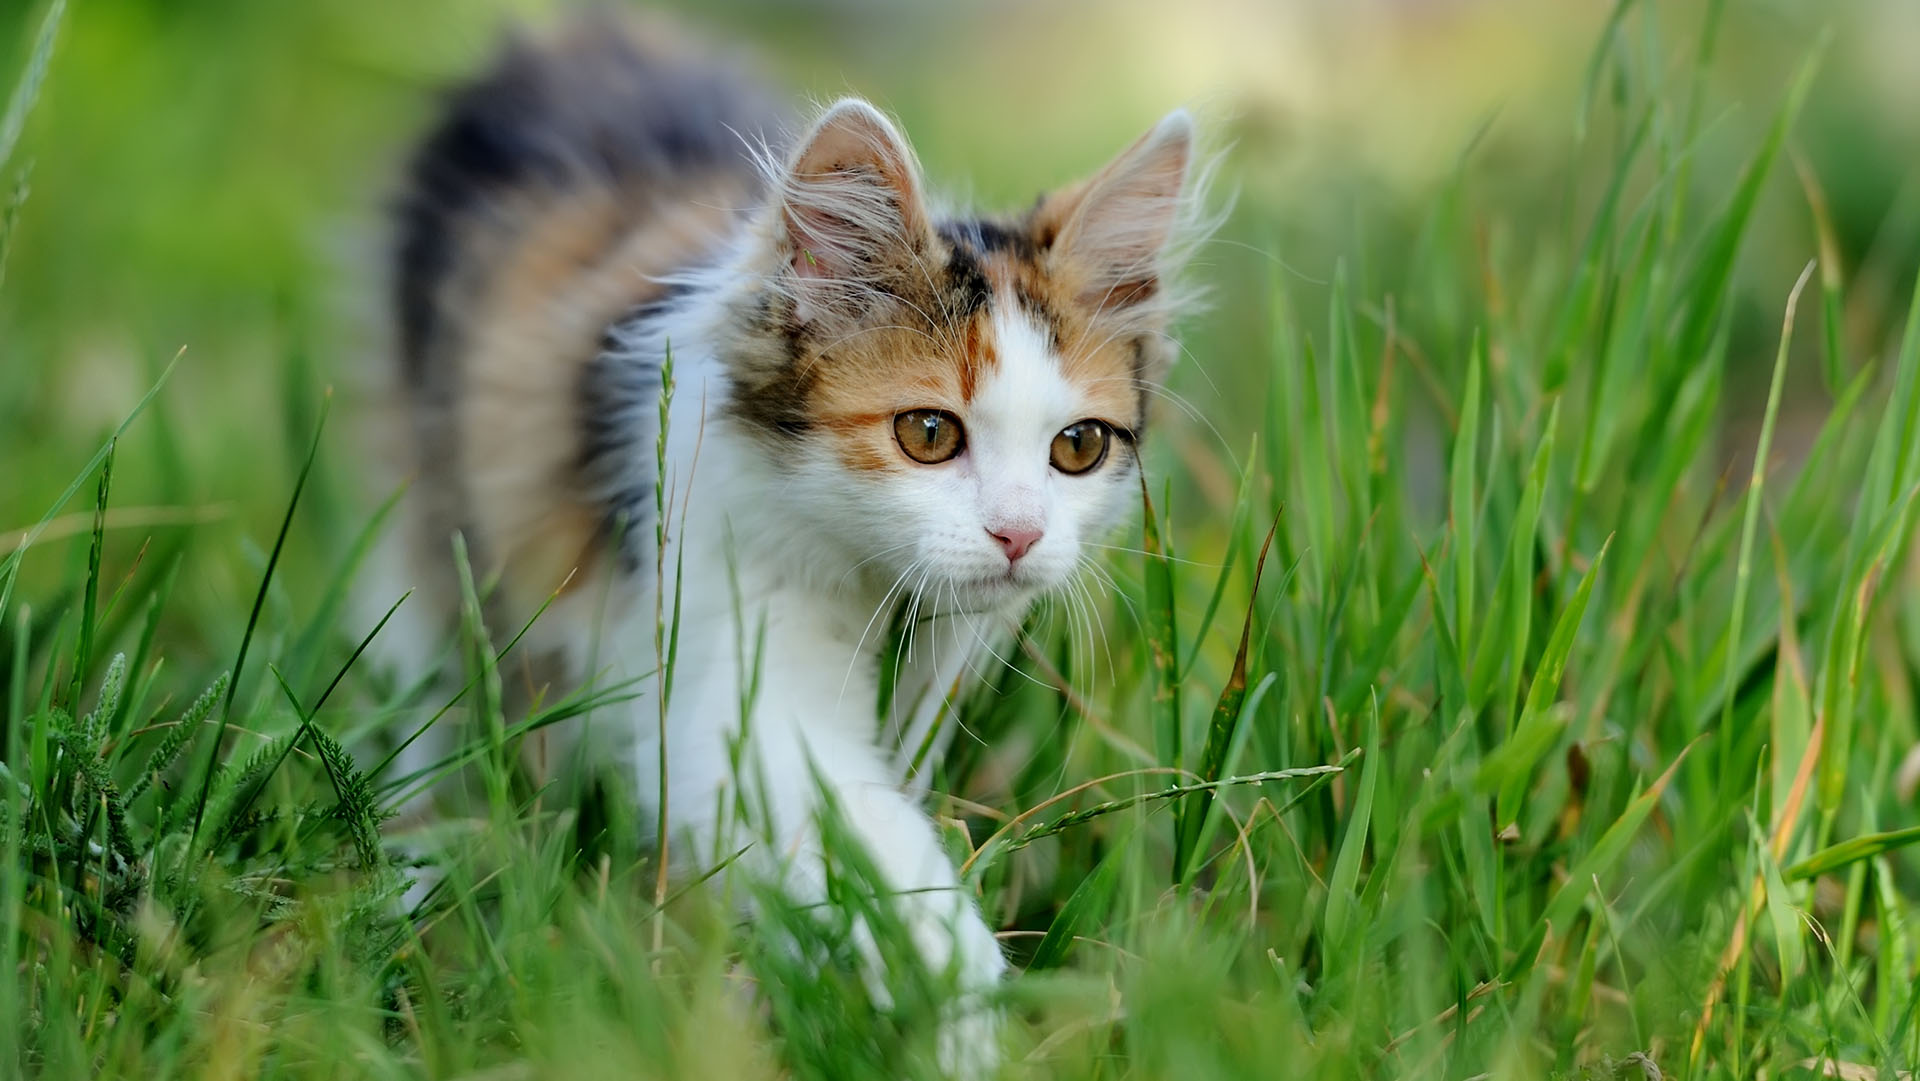 Kotek spacerujący po trawie